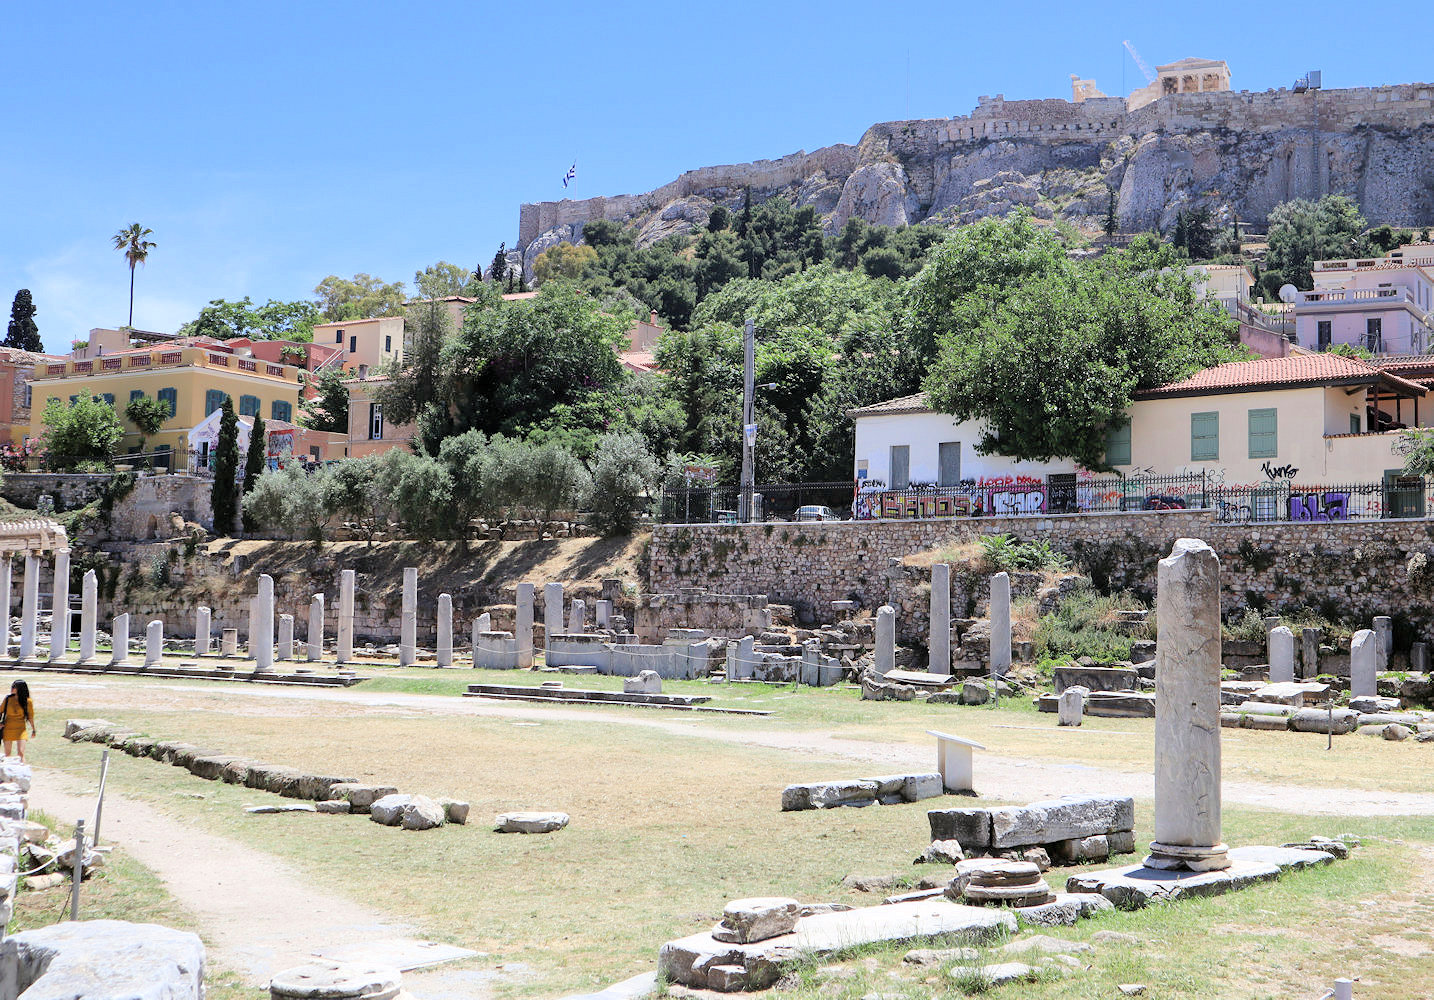 römische Agora in Athen, im Hintergrund die Akropolis